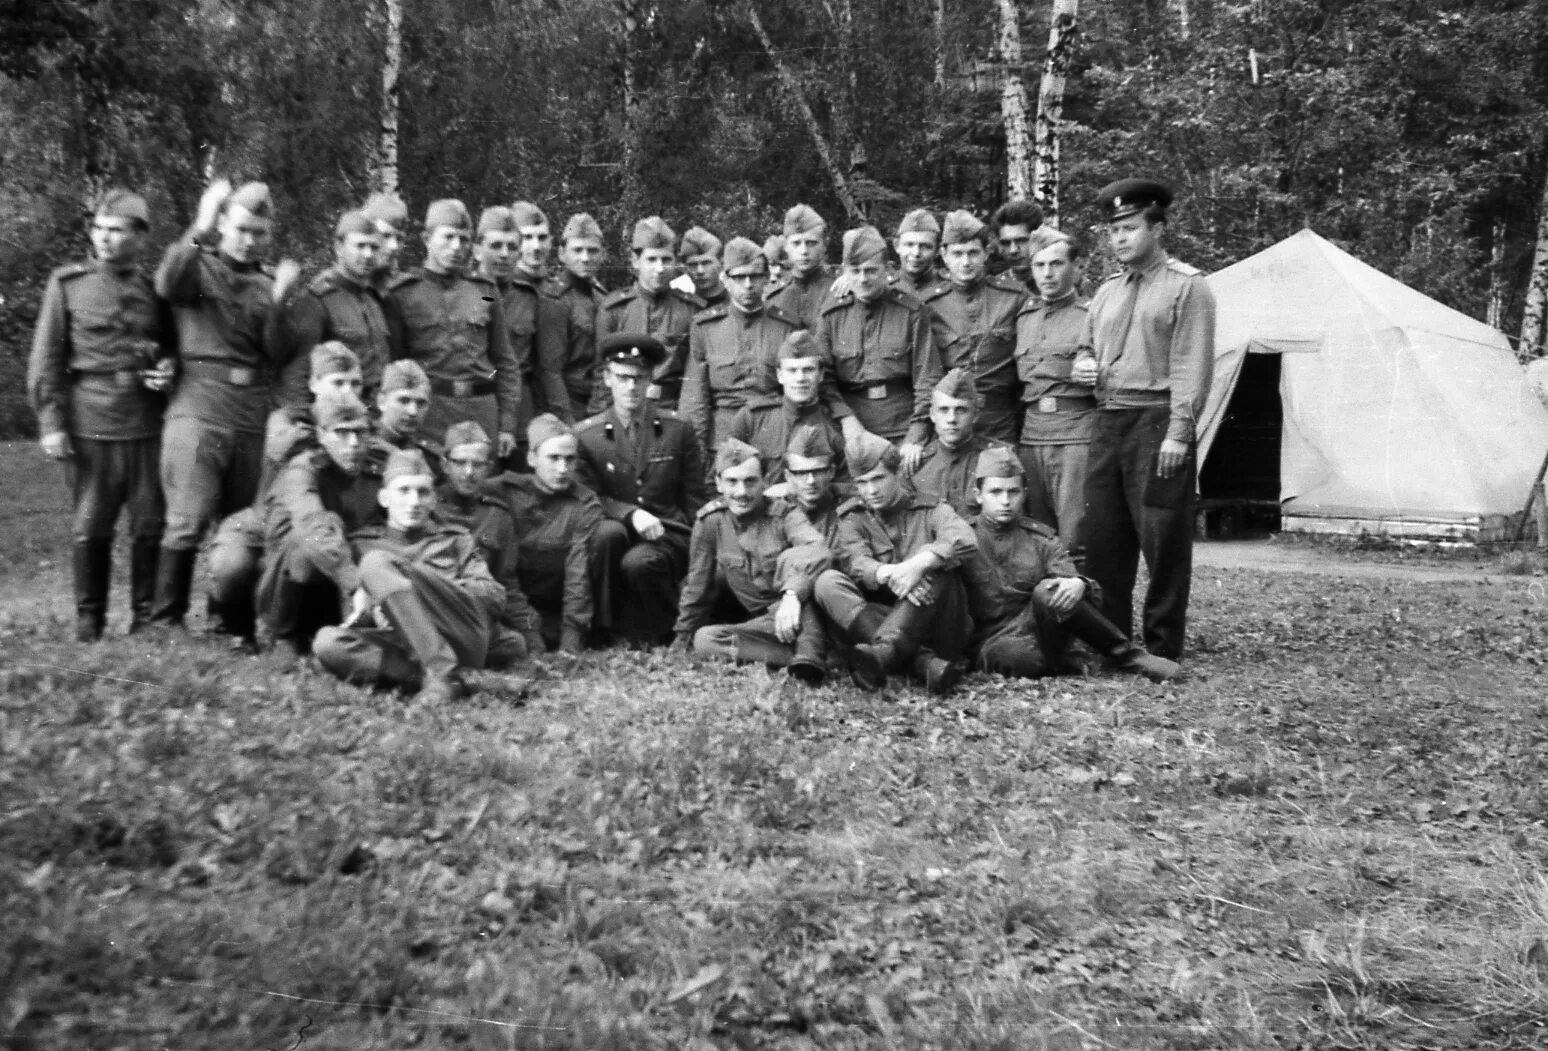 Гороховецкие лагеря в 1941 году. Чебаркульский военный лагерь 1941. Бершетский военный лагерь 1941. Гороховецкие лагеря в 1940 году. Лагерь 3 недели